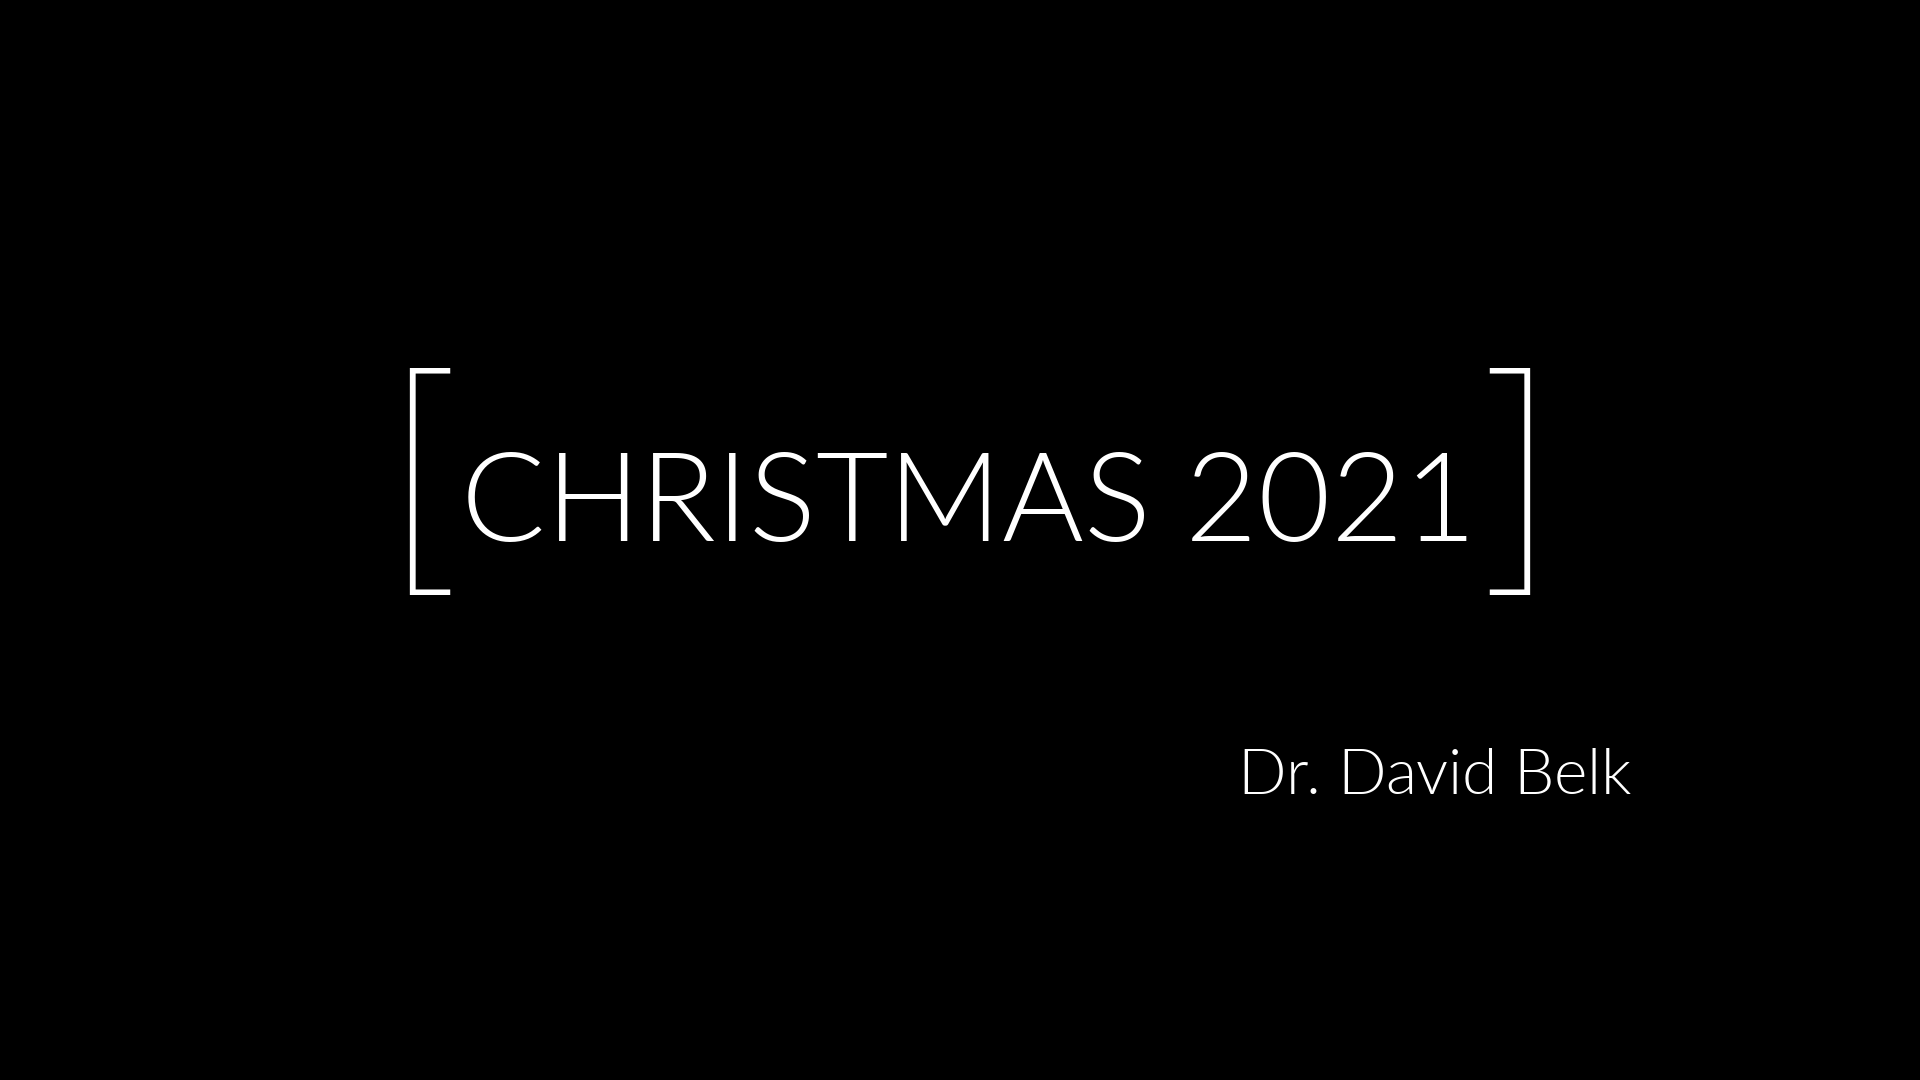 Christmas Eve 2021